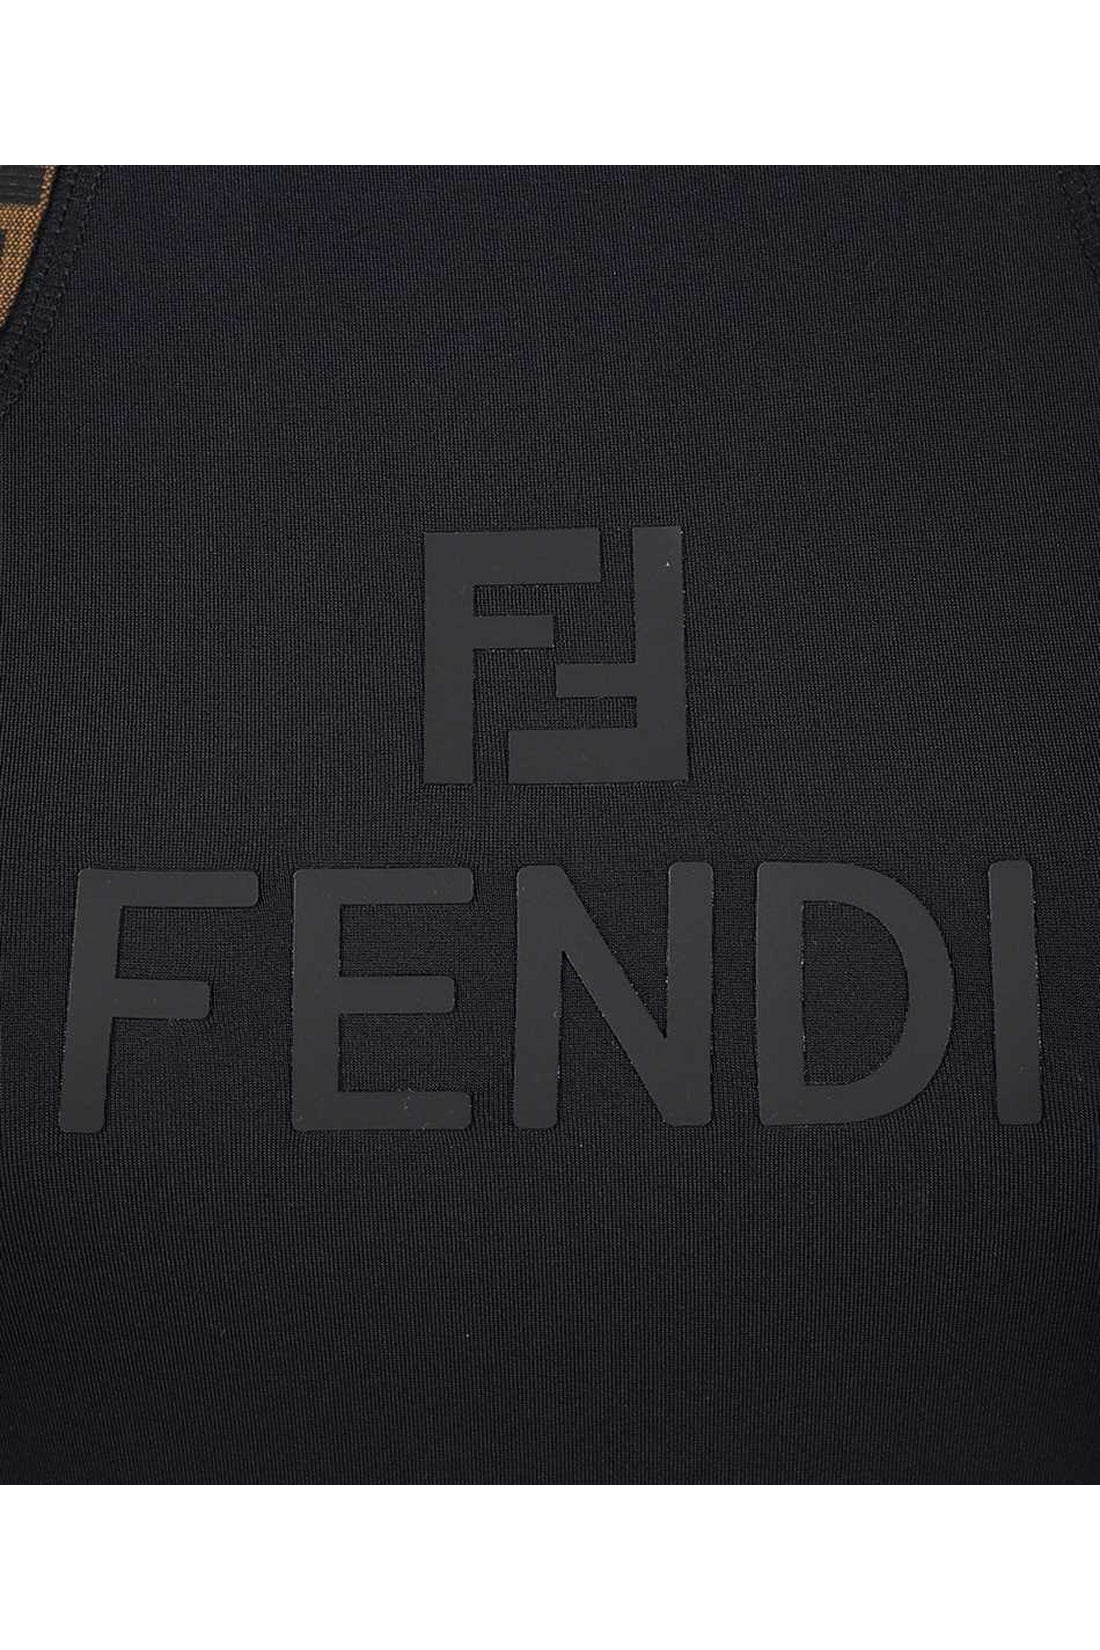 Fendi-OUTLET-SALE-Logo sport jumpsuit-ARCHIVIST